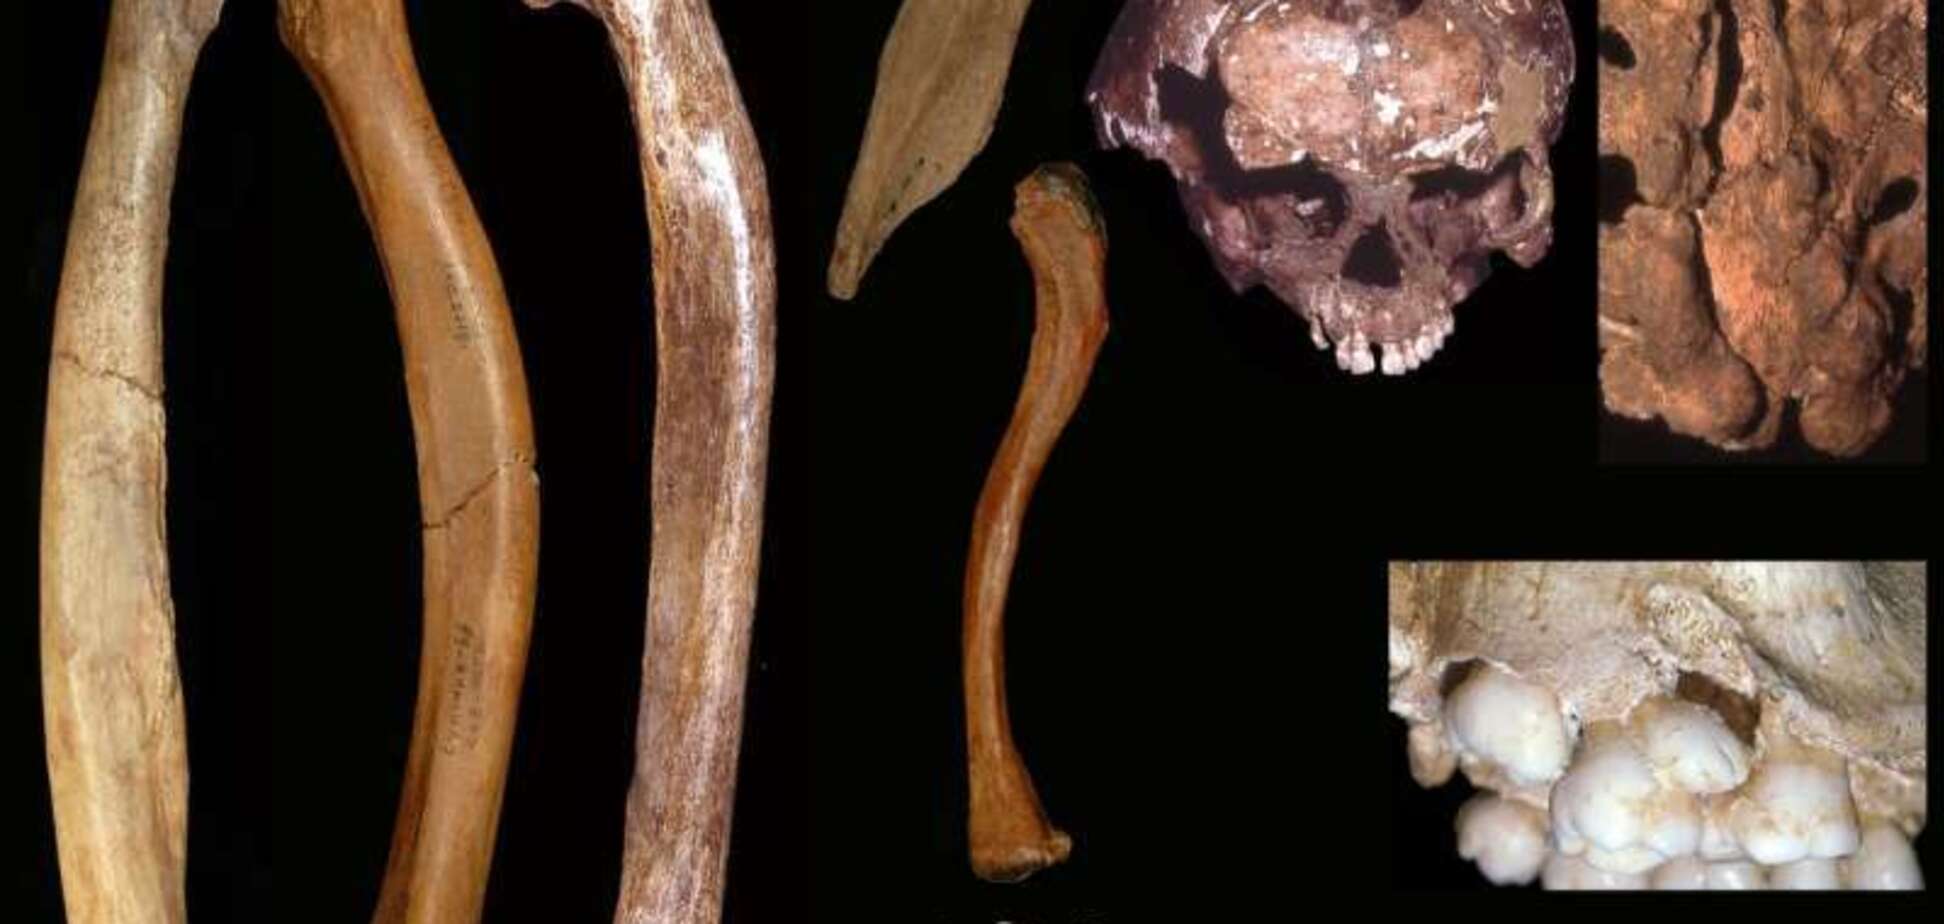  Искривленные руки и деформированные челюсти: стало известно о жутких аномалиях у древних людей